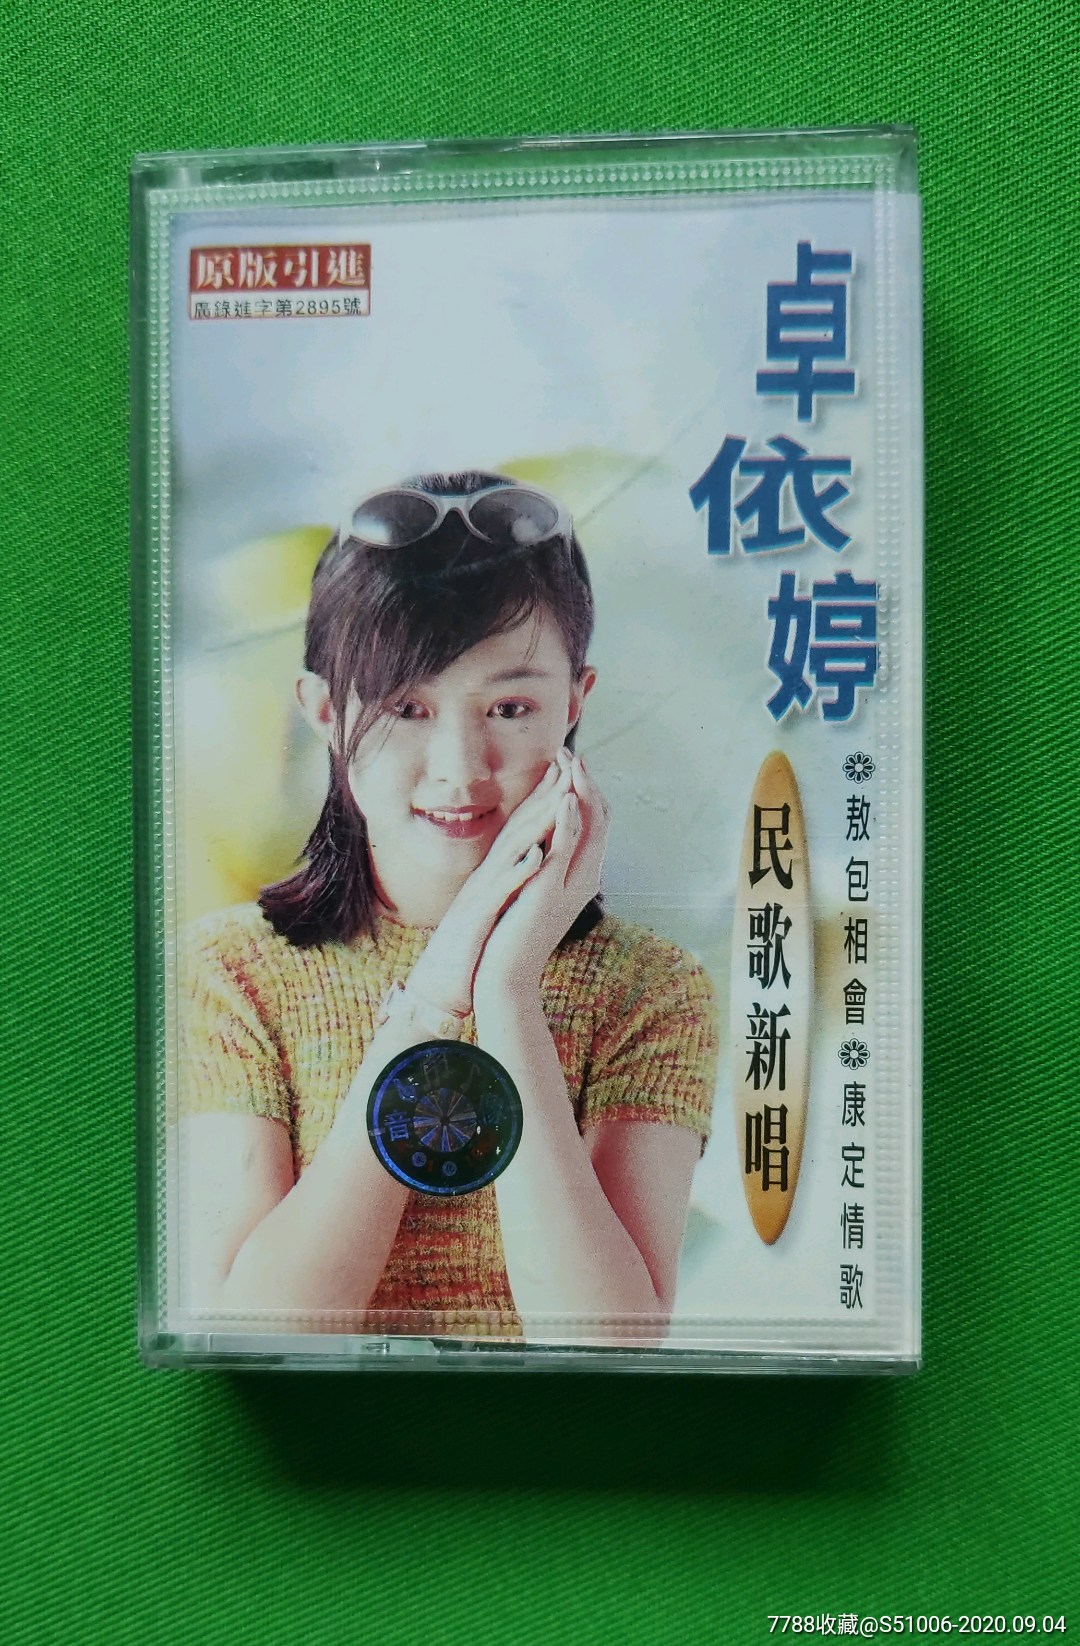 台湾女歌手卓依婷的歌图片